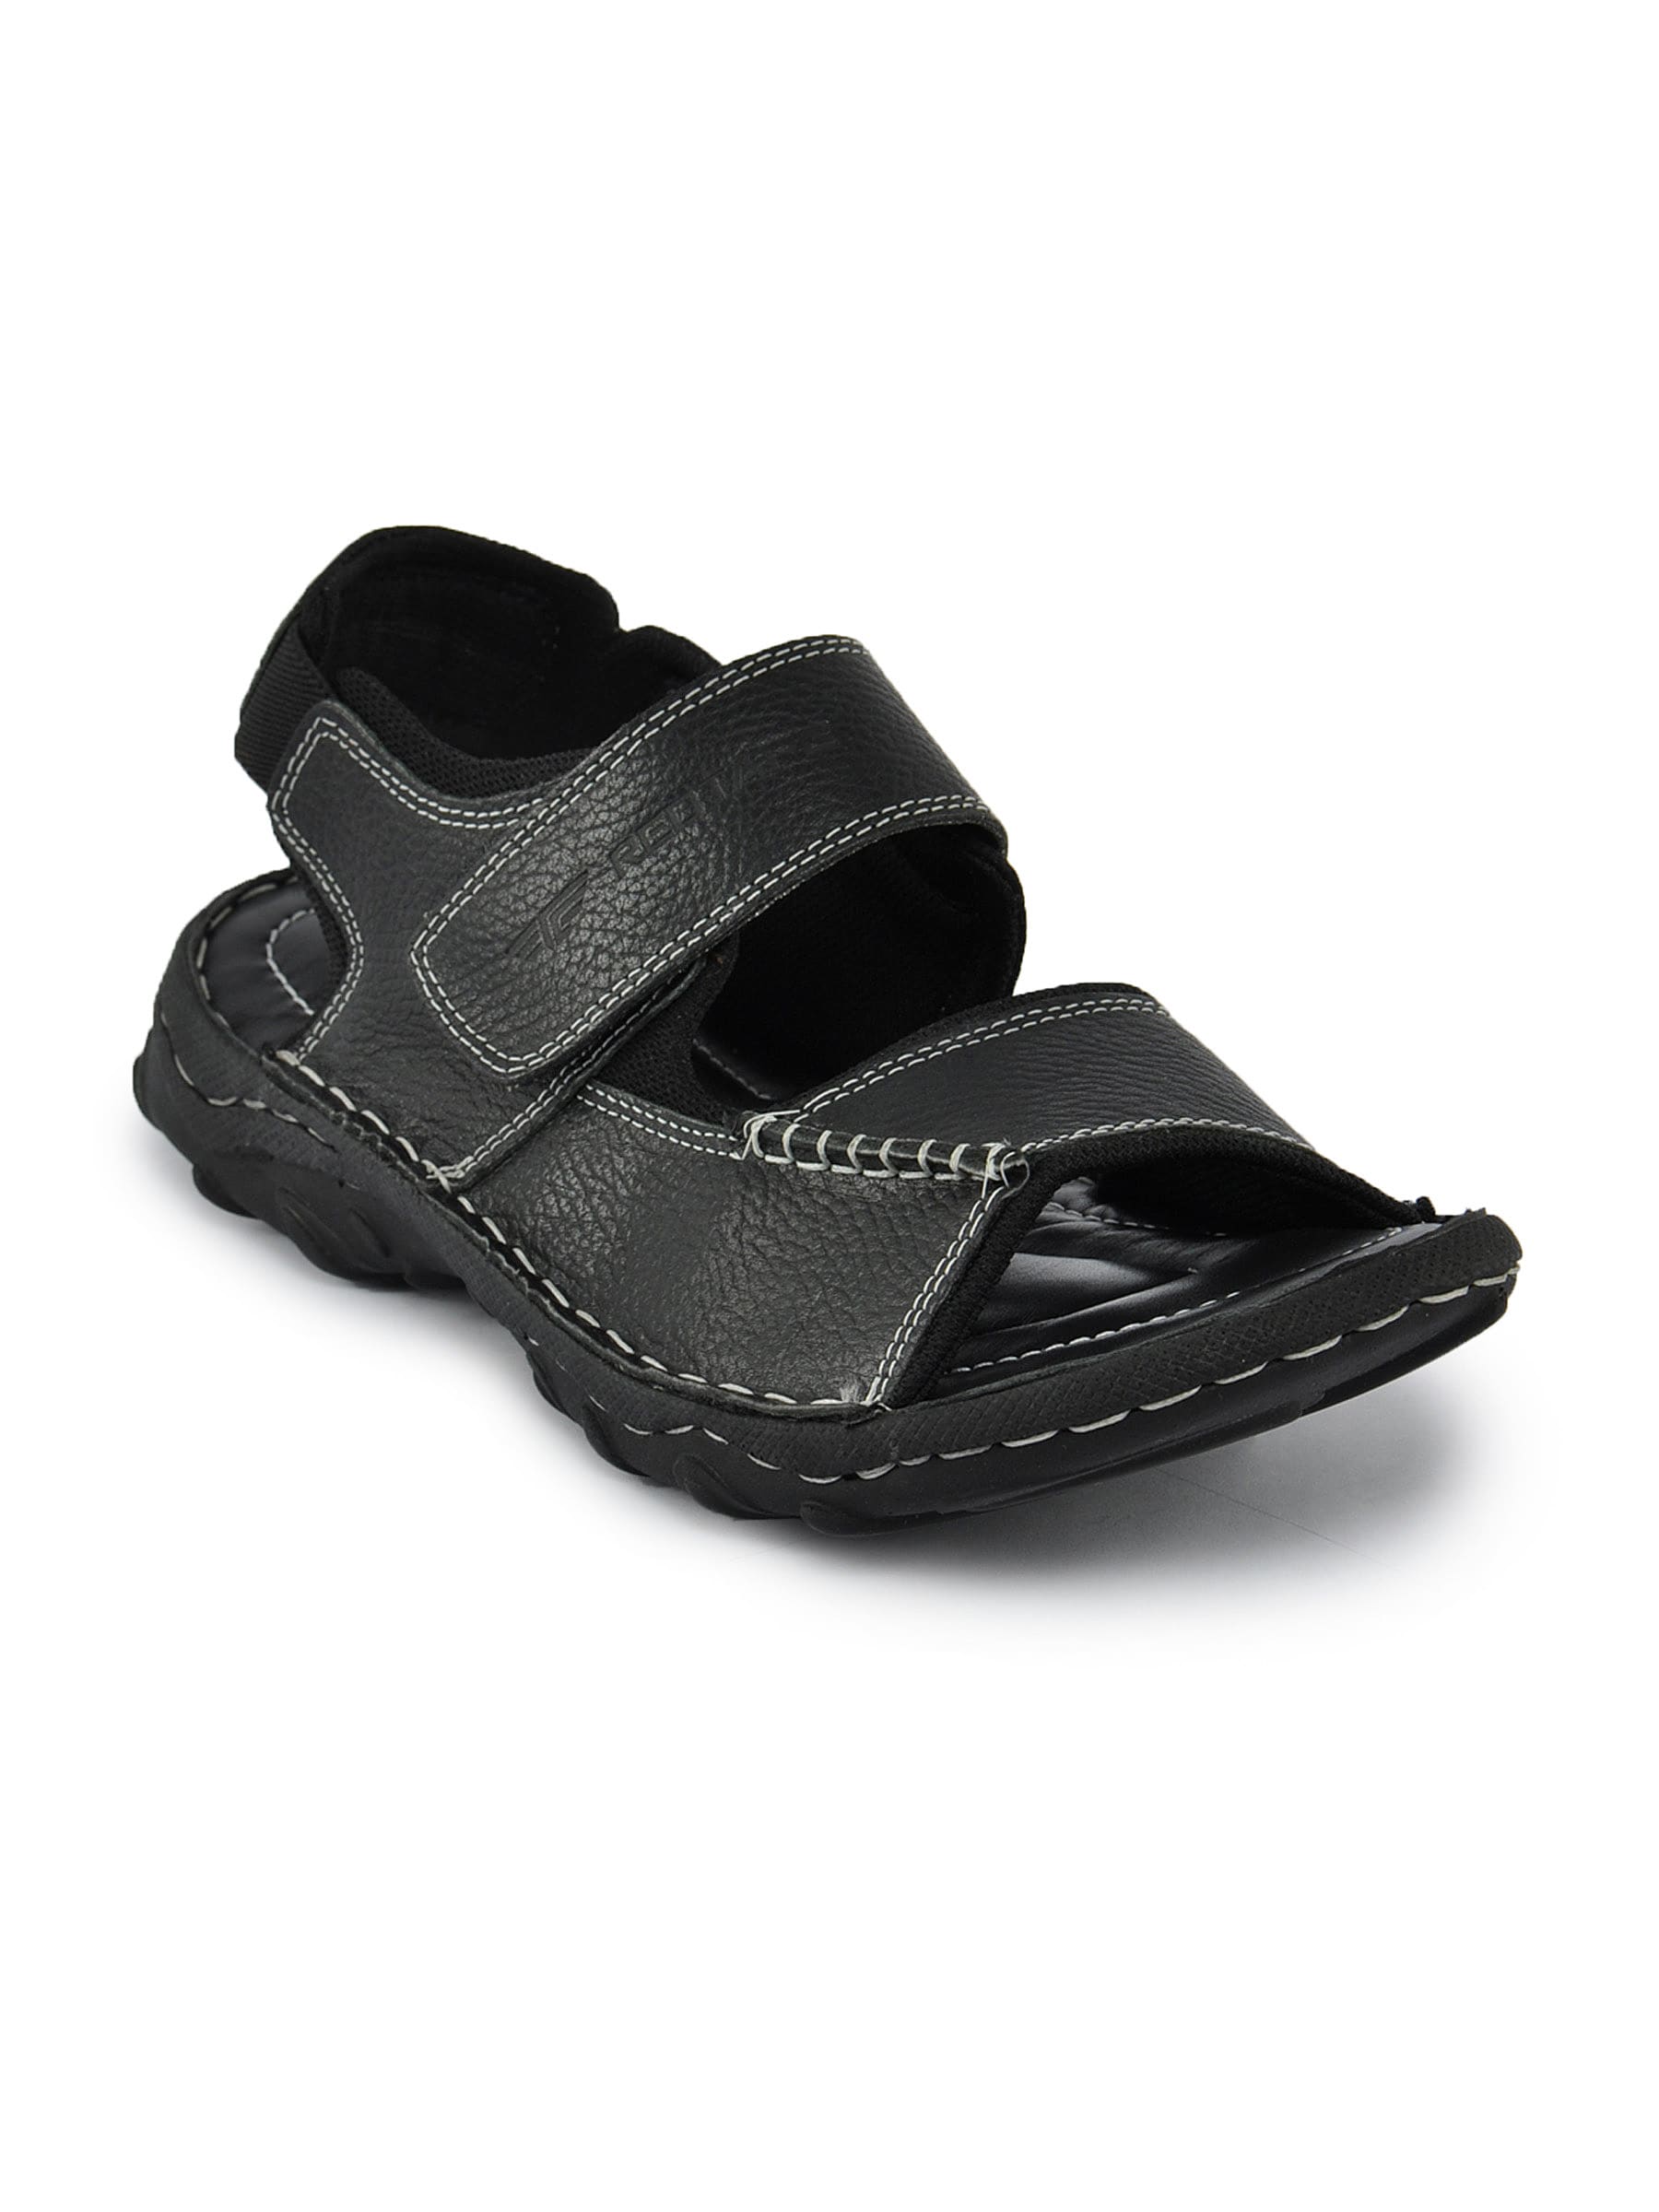 Redtape Men Comfort Black Sandals